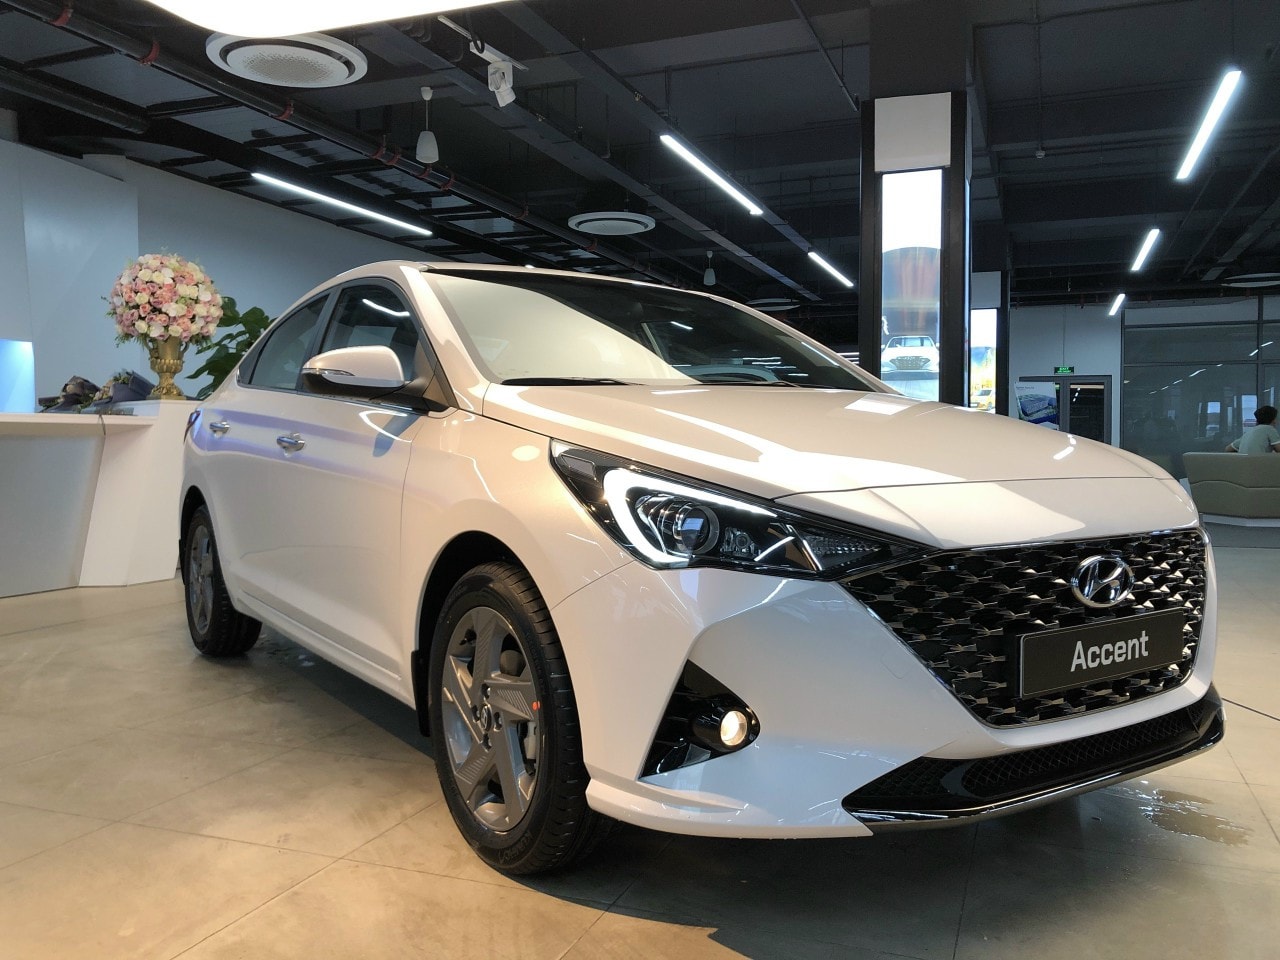 Hyundai Accent 2021 Noir / HYUNDAI ACCENT 2021 - KIẾN TẠO LỐI ĐI RIÊNG ...